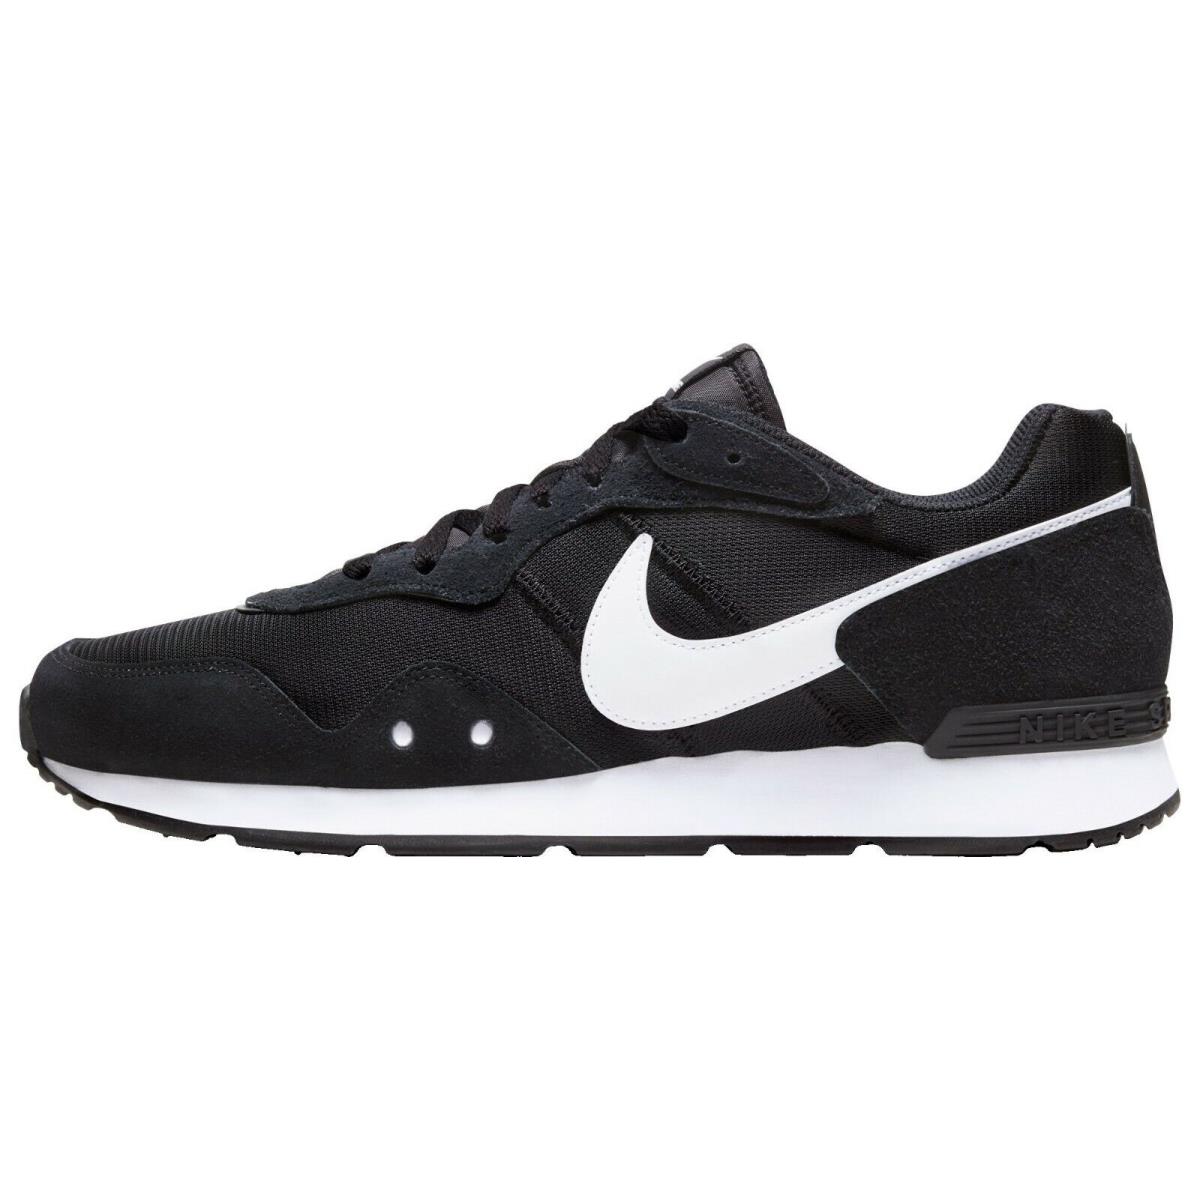 Men Nike Venture Runner Shoes - Black/White